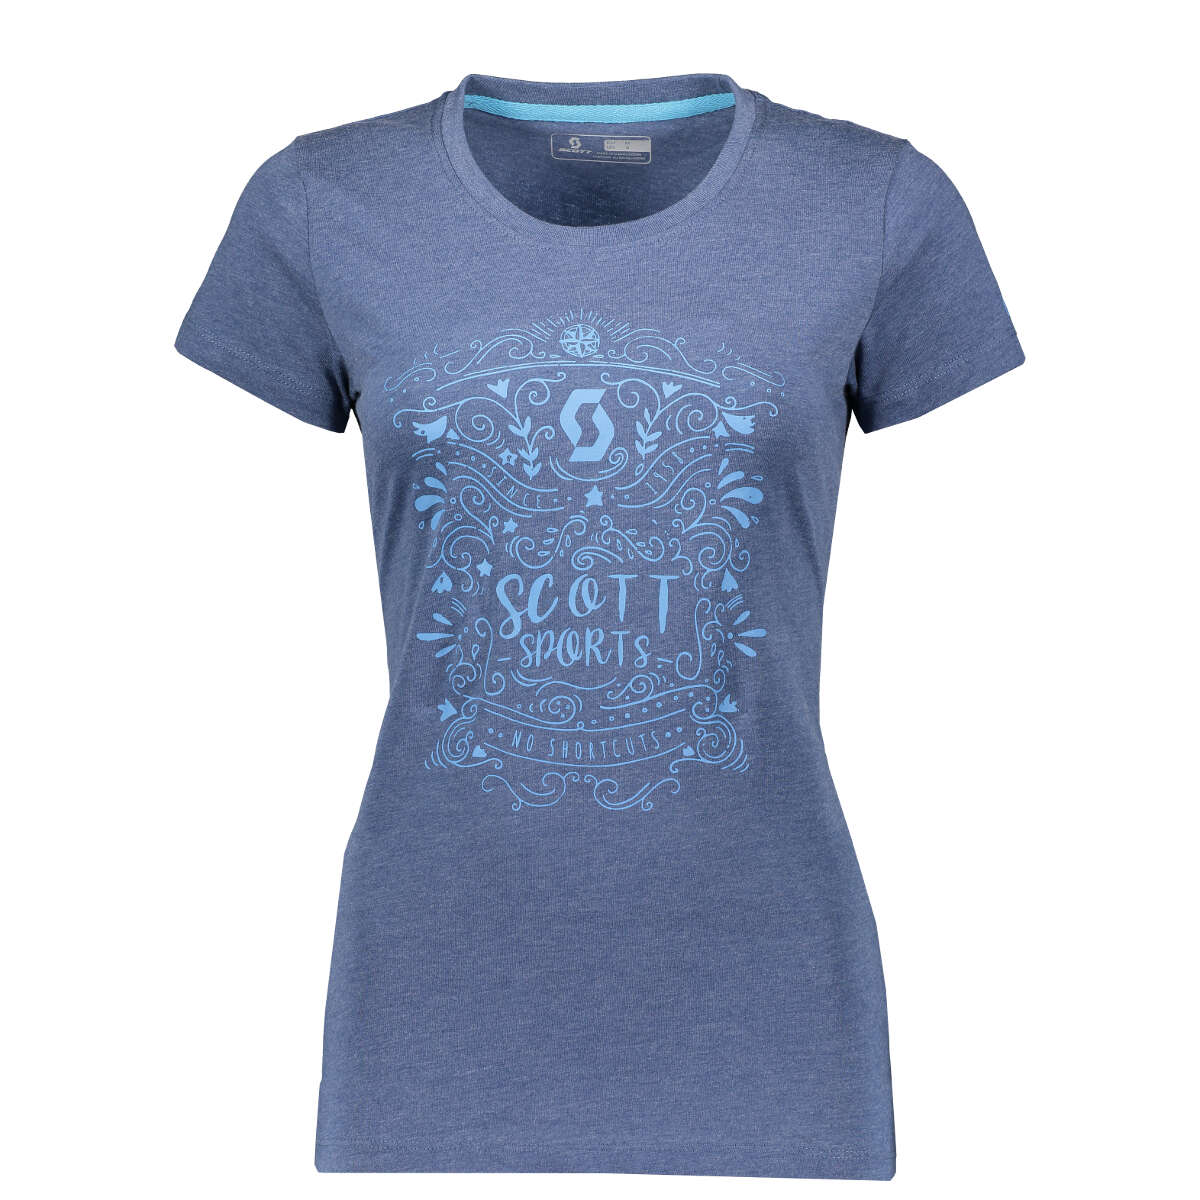 Scott Femme T-Shirt 20 Casual Ensign Heather Bleu